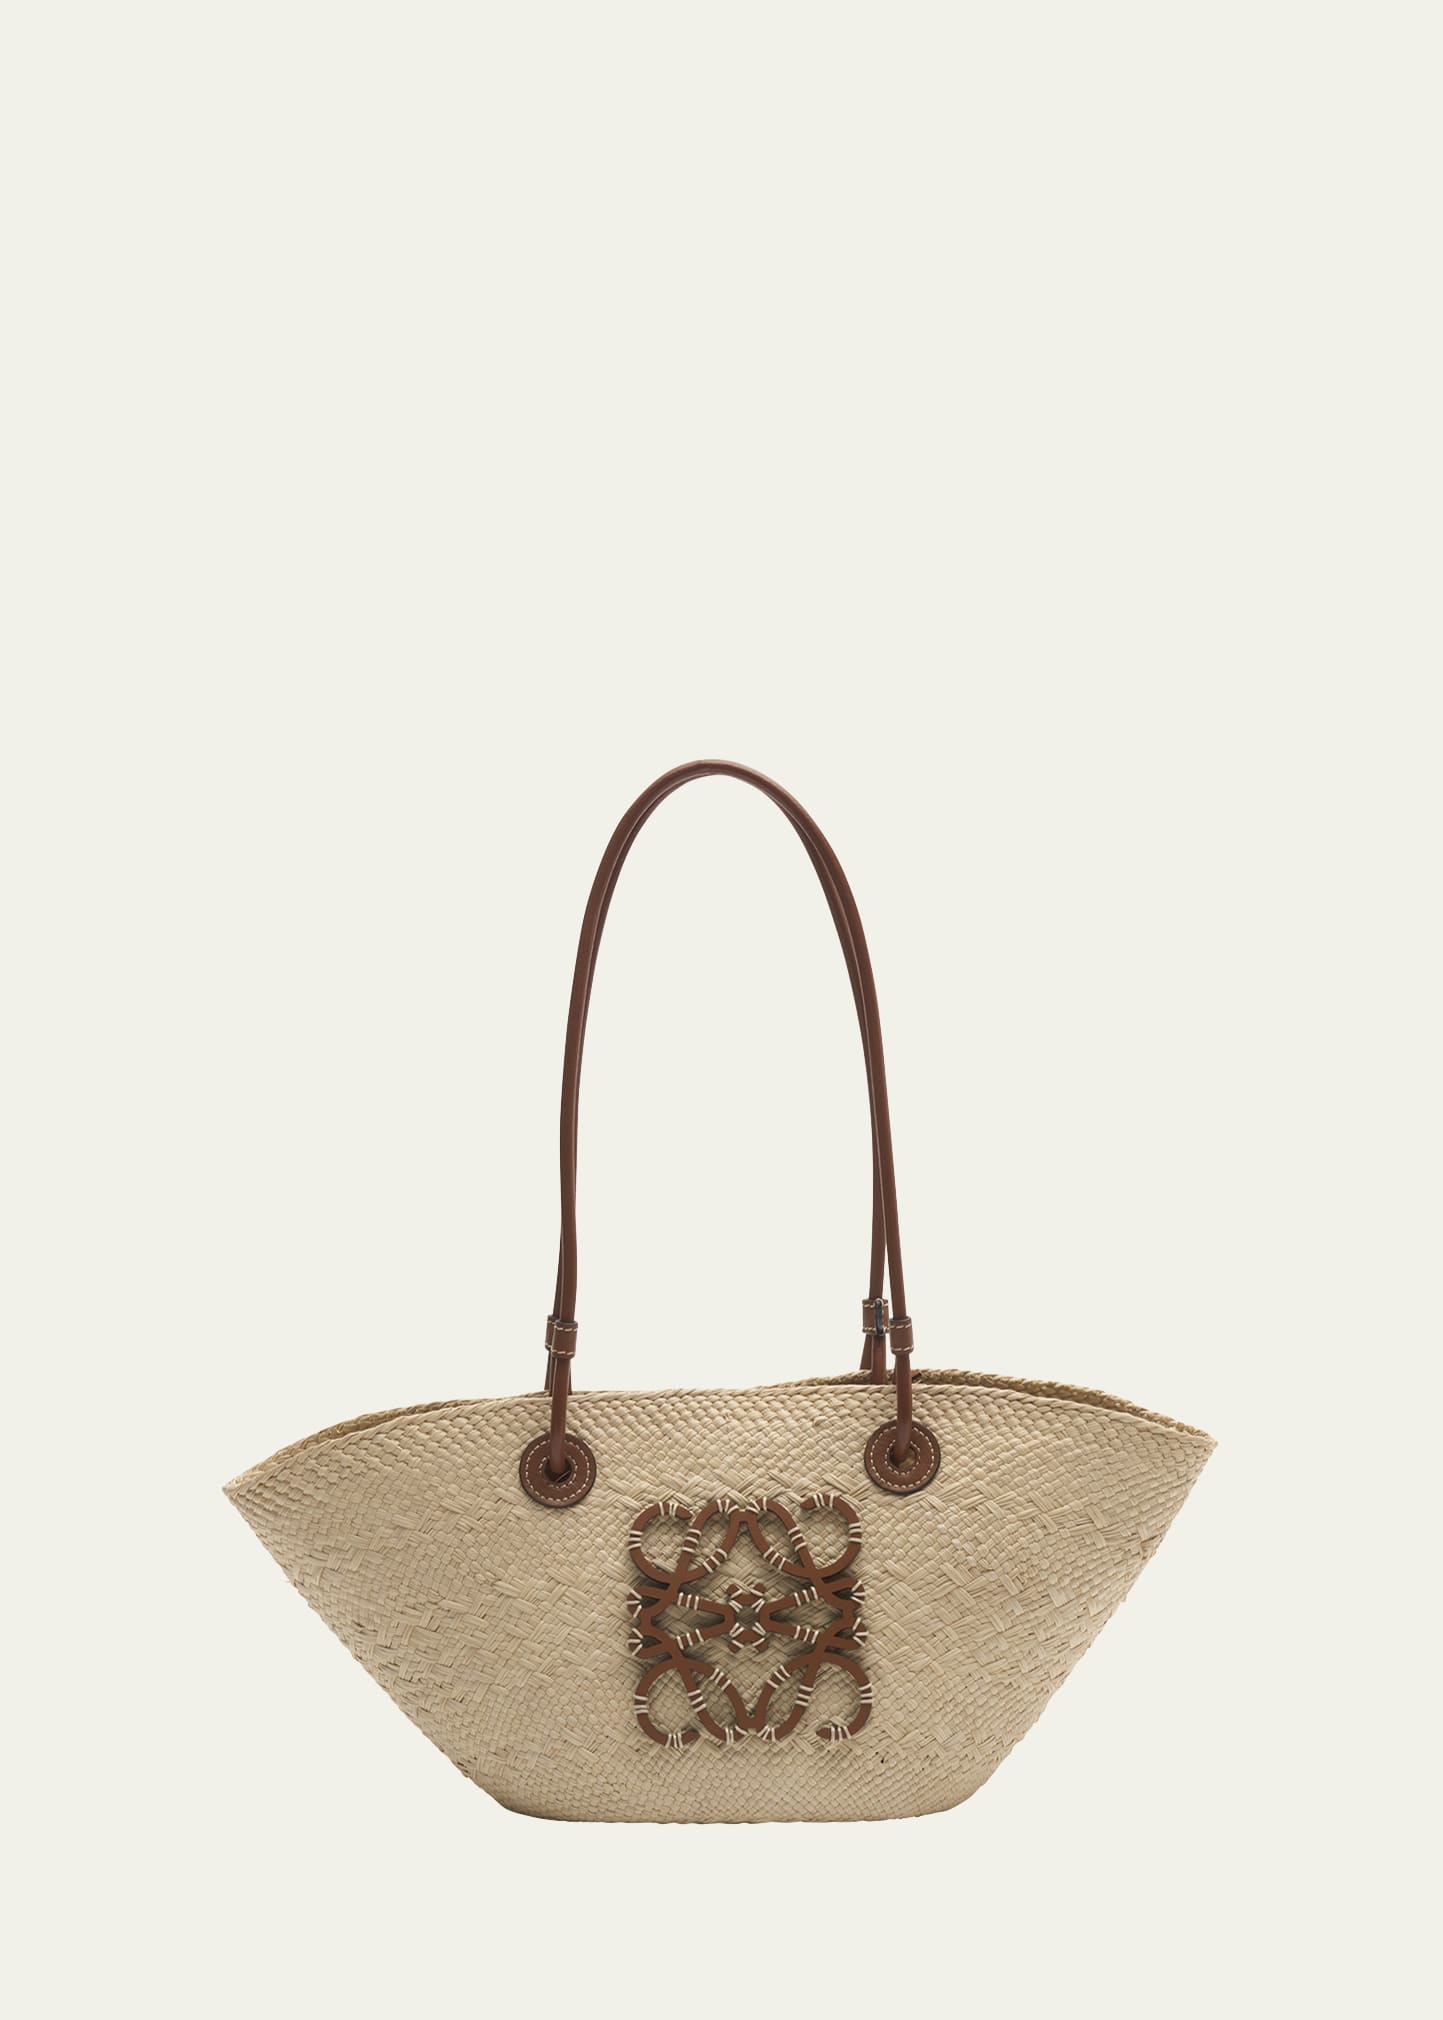 Paulas Ibiza Anagram Bucket Bag in Brown - Loewe